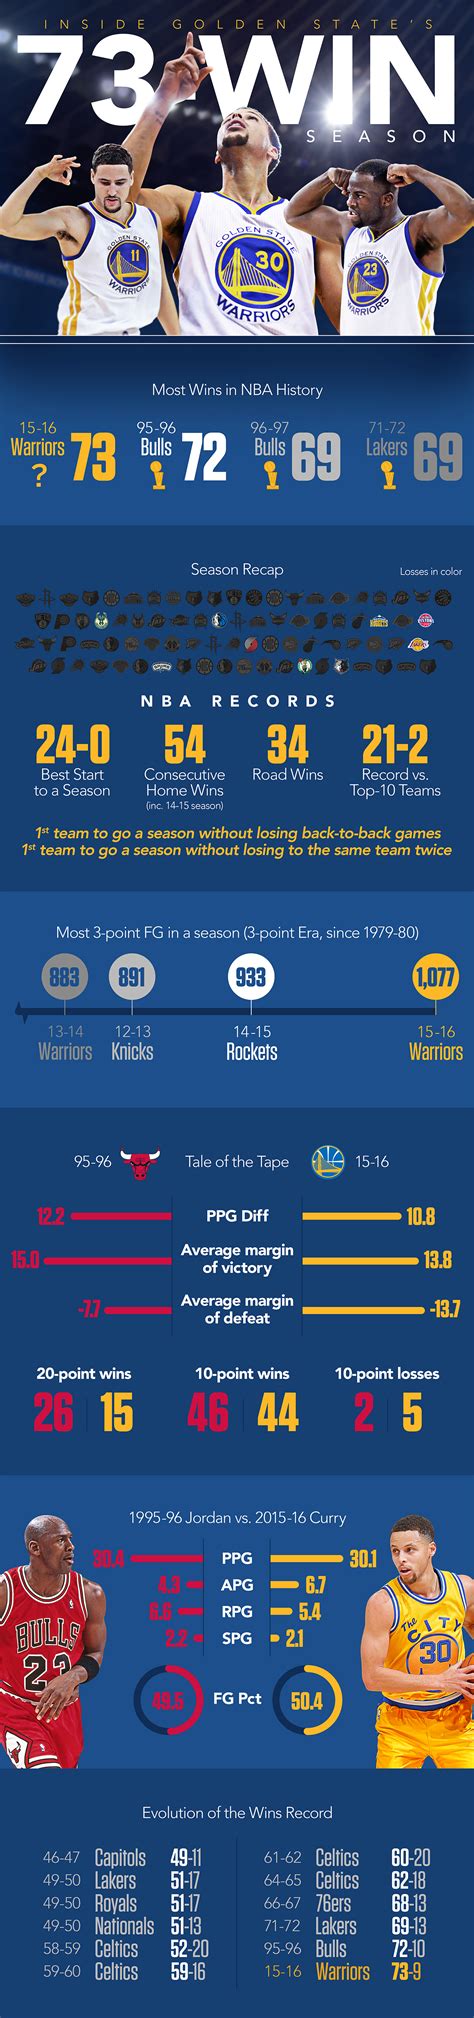 Visit ESPN for Golden State Warriors live scores, v